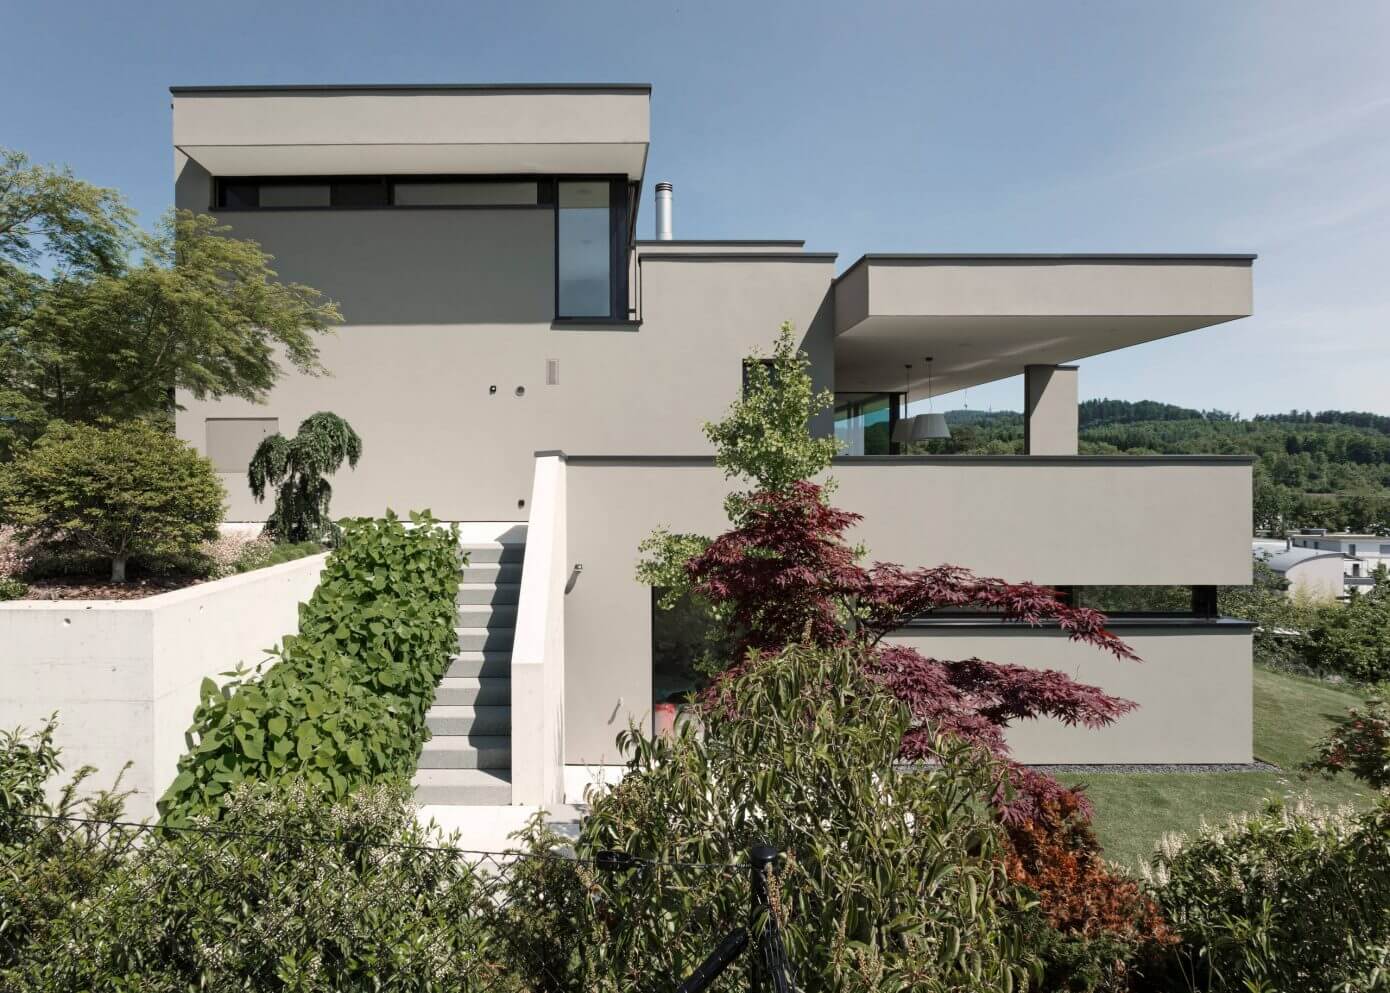 House in Zurich by Meier Architekten